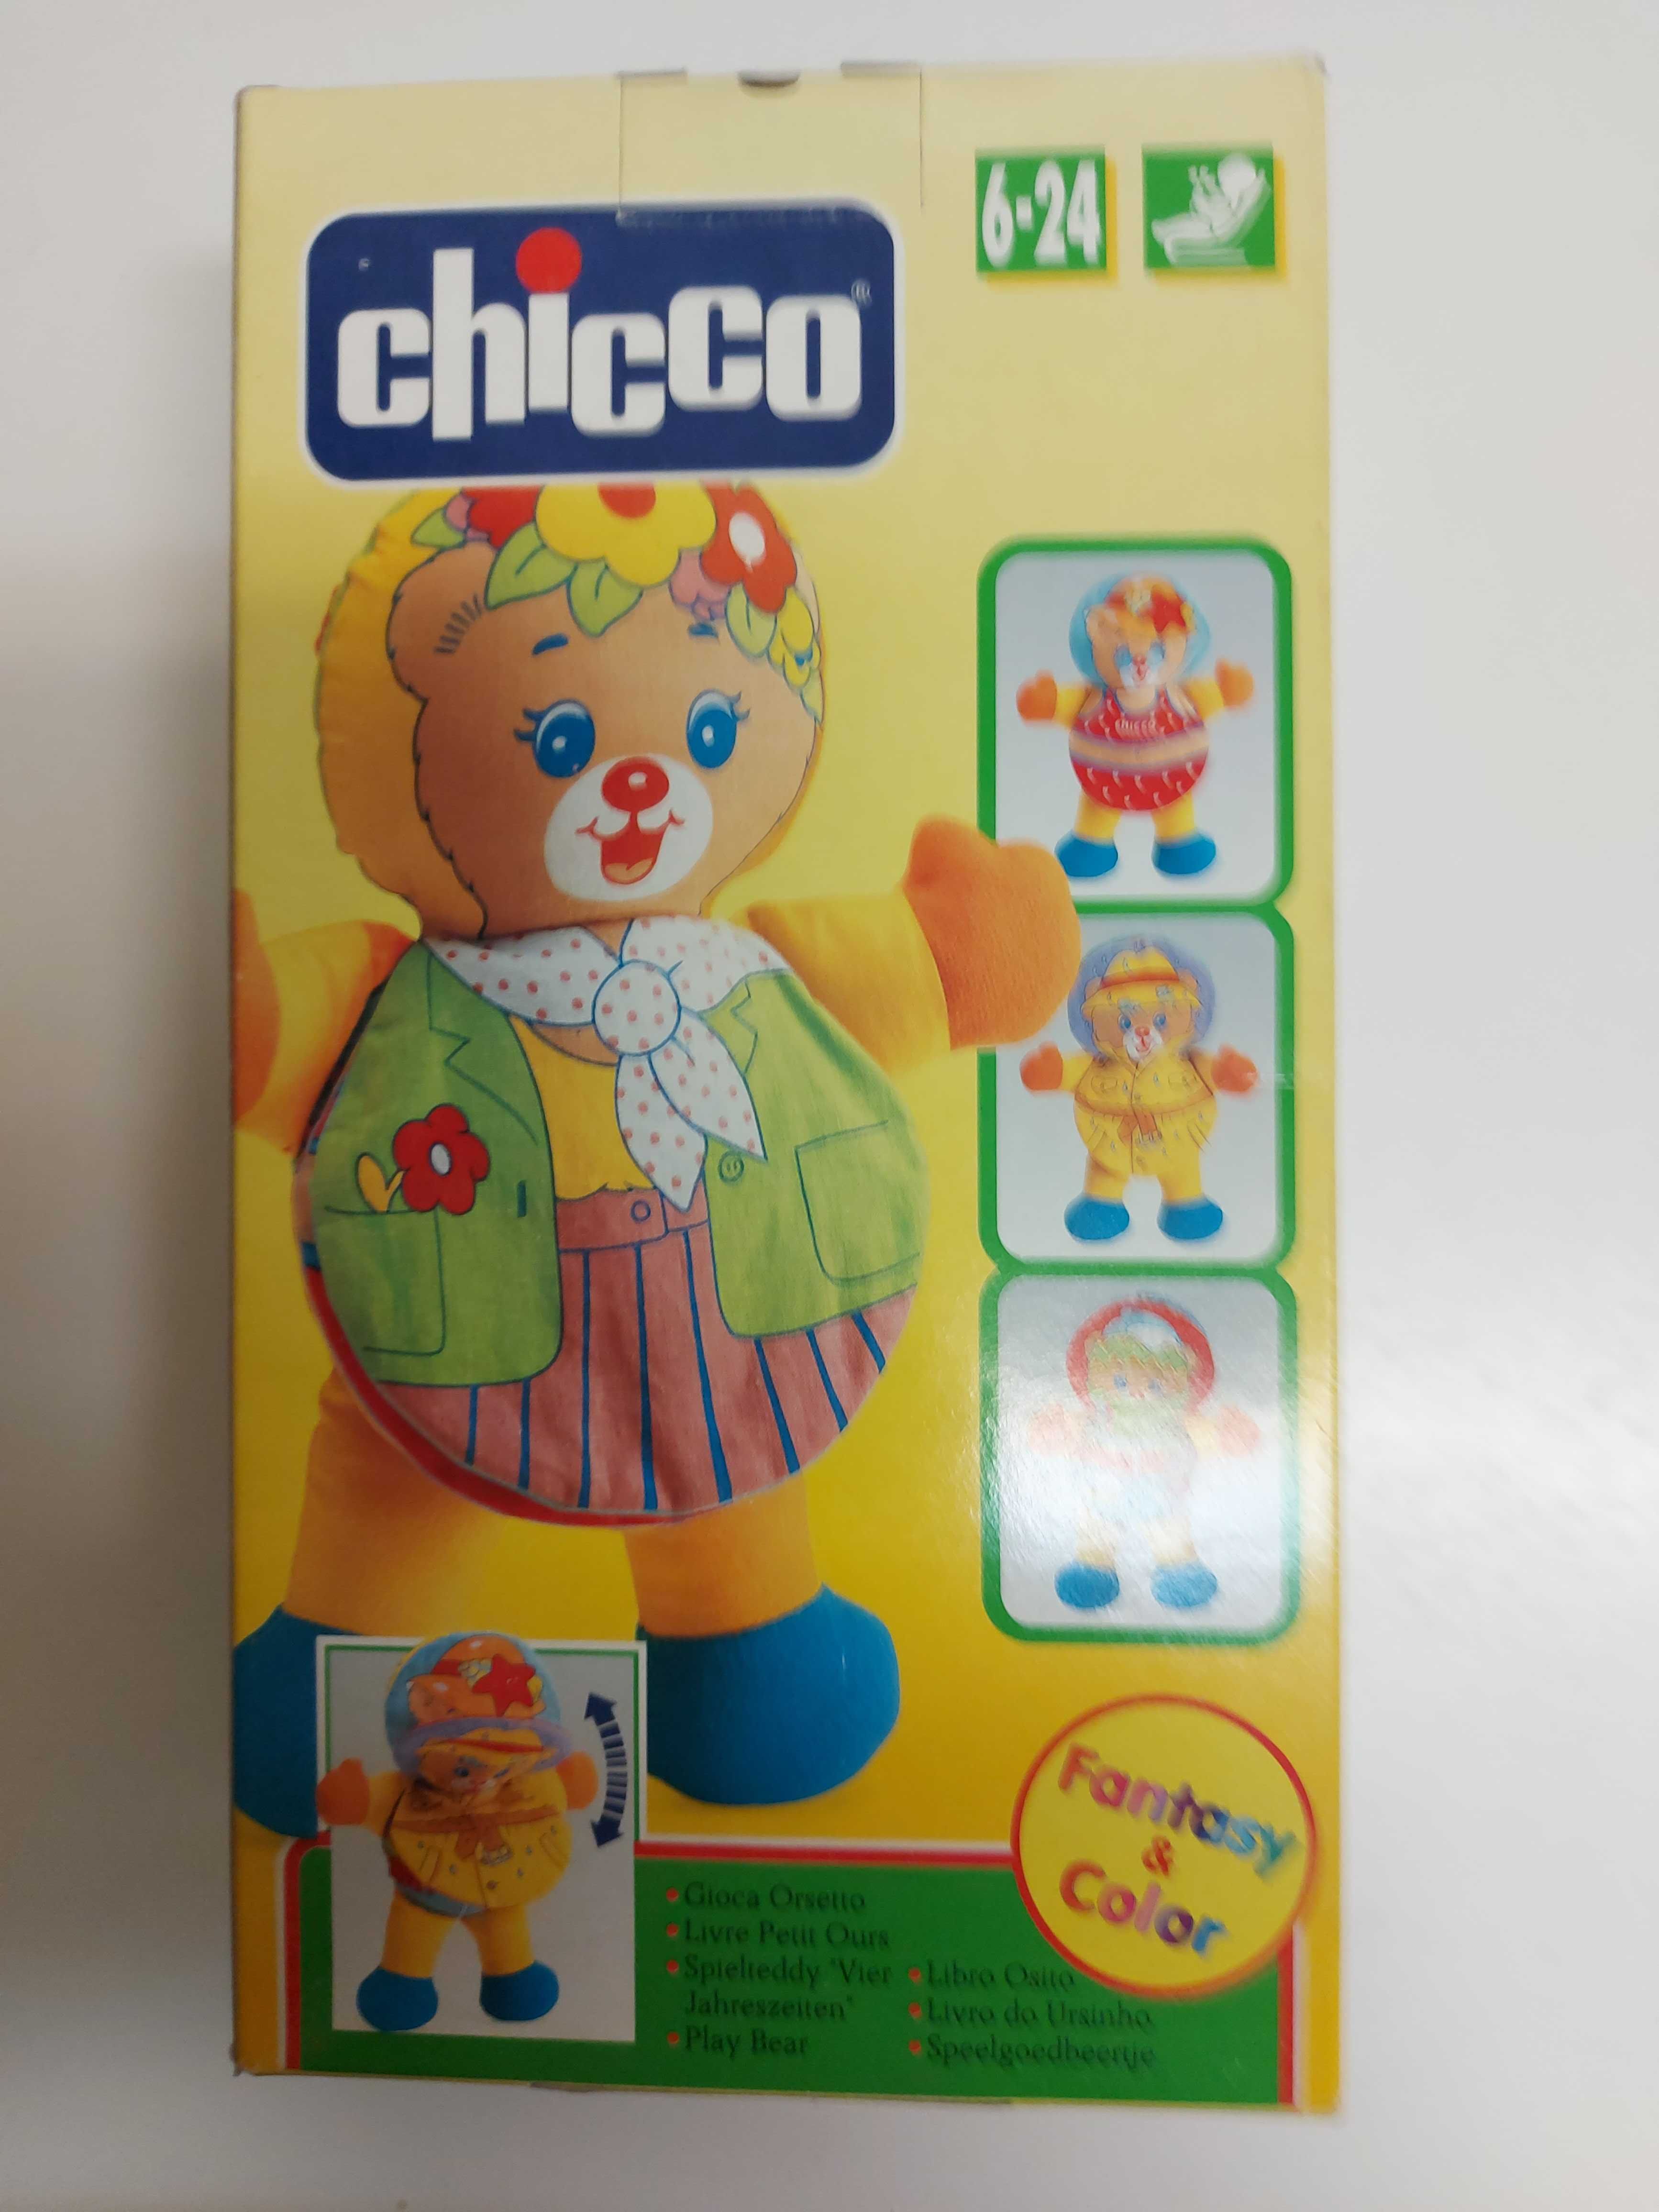 Brinquedos de Criança da CHICCO, a partir de 12 euros.